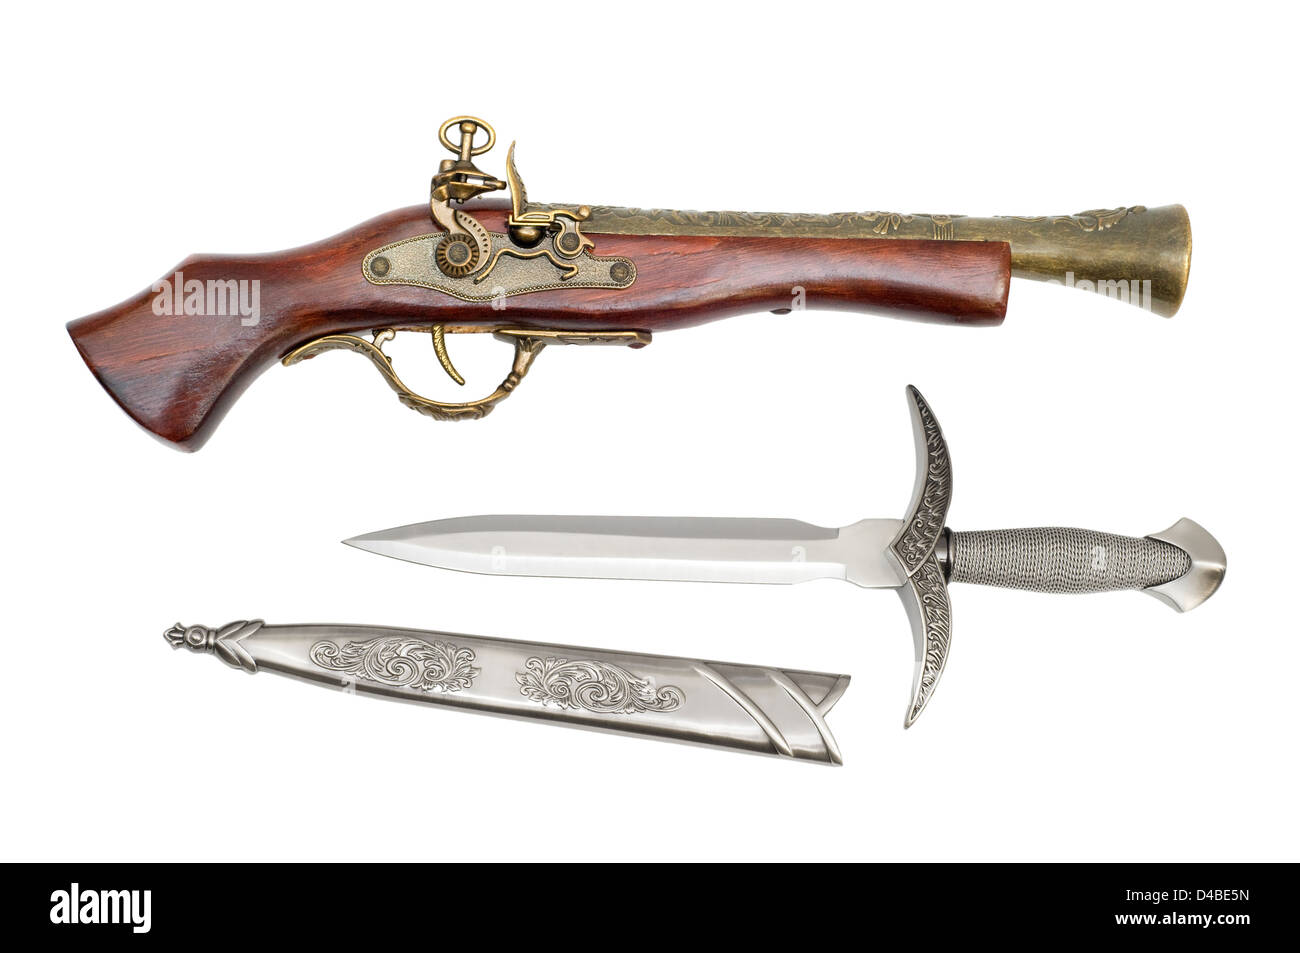 L'ancienne dague et pistolet sont photographiés un close-up Banque D'Images